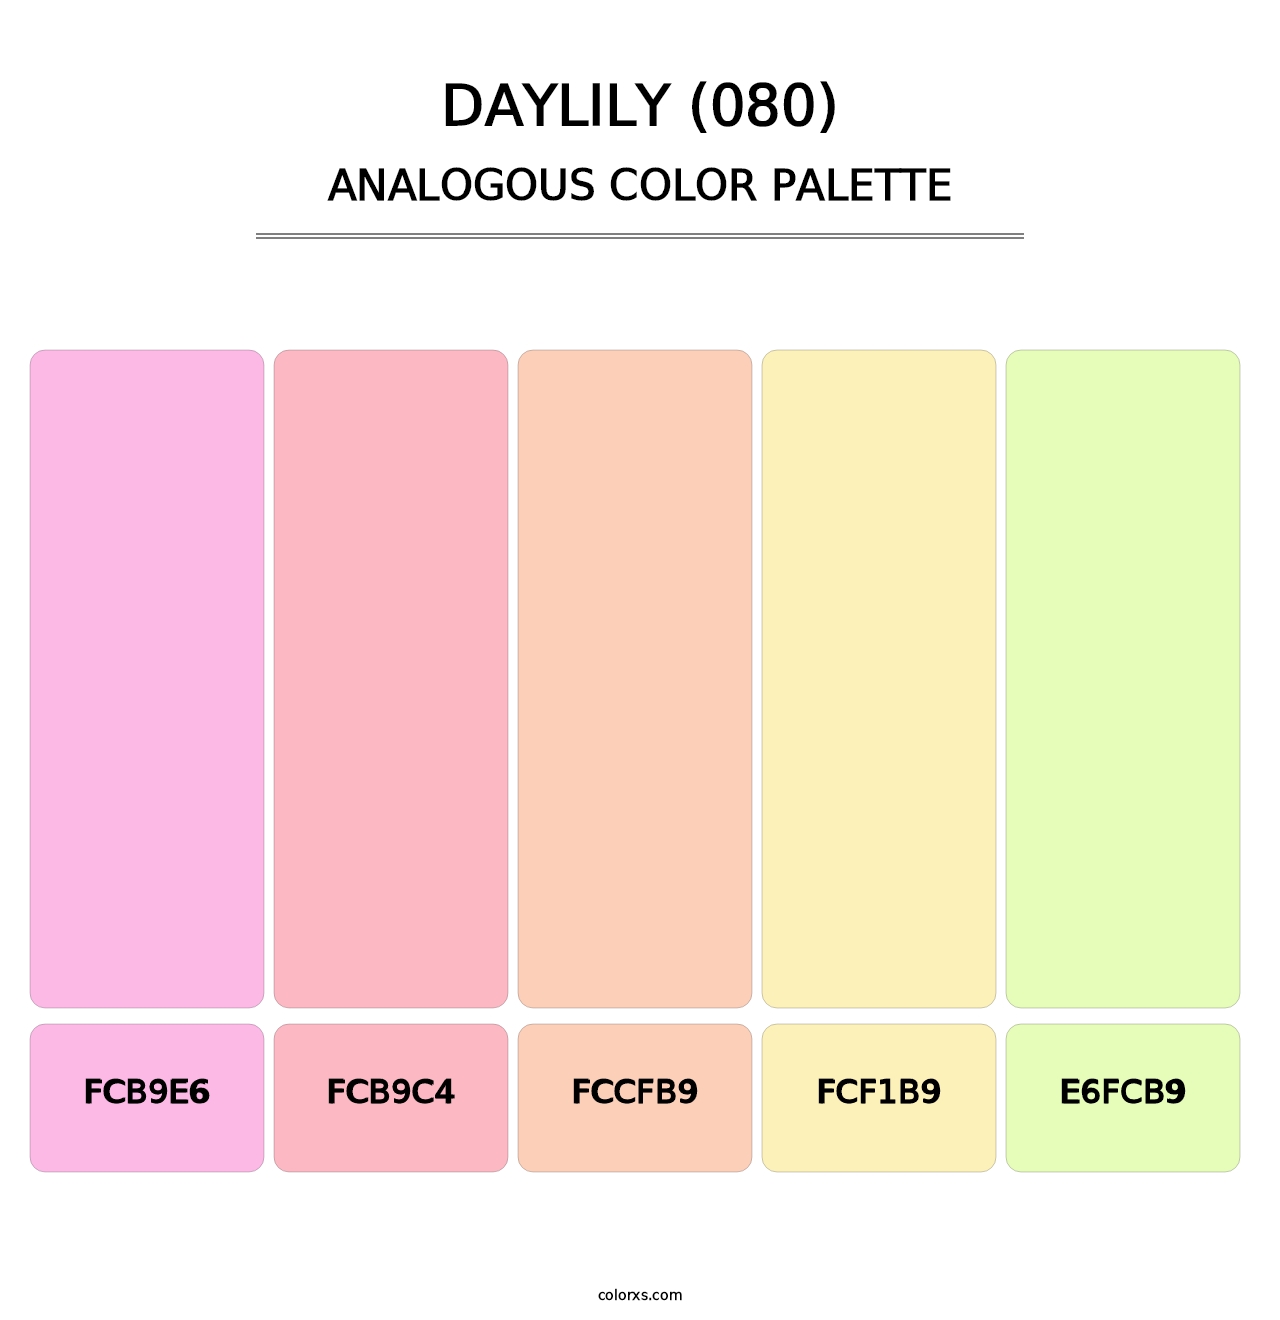 Daylily (080) - Analogous Color Palette